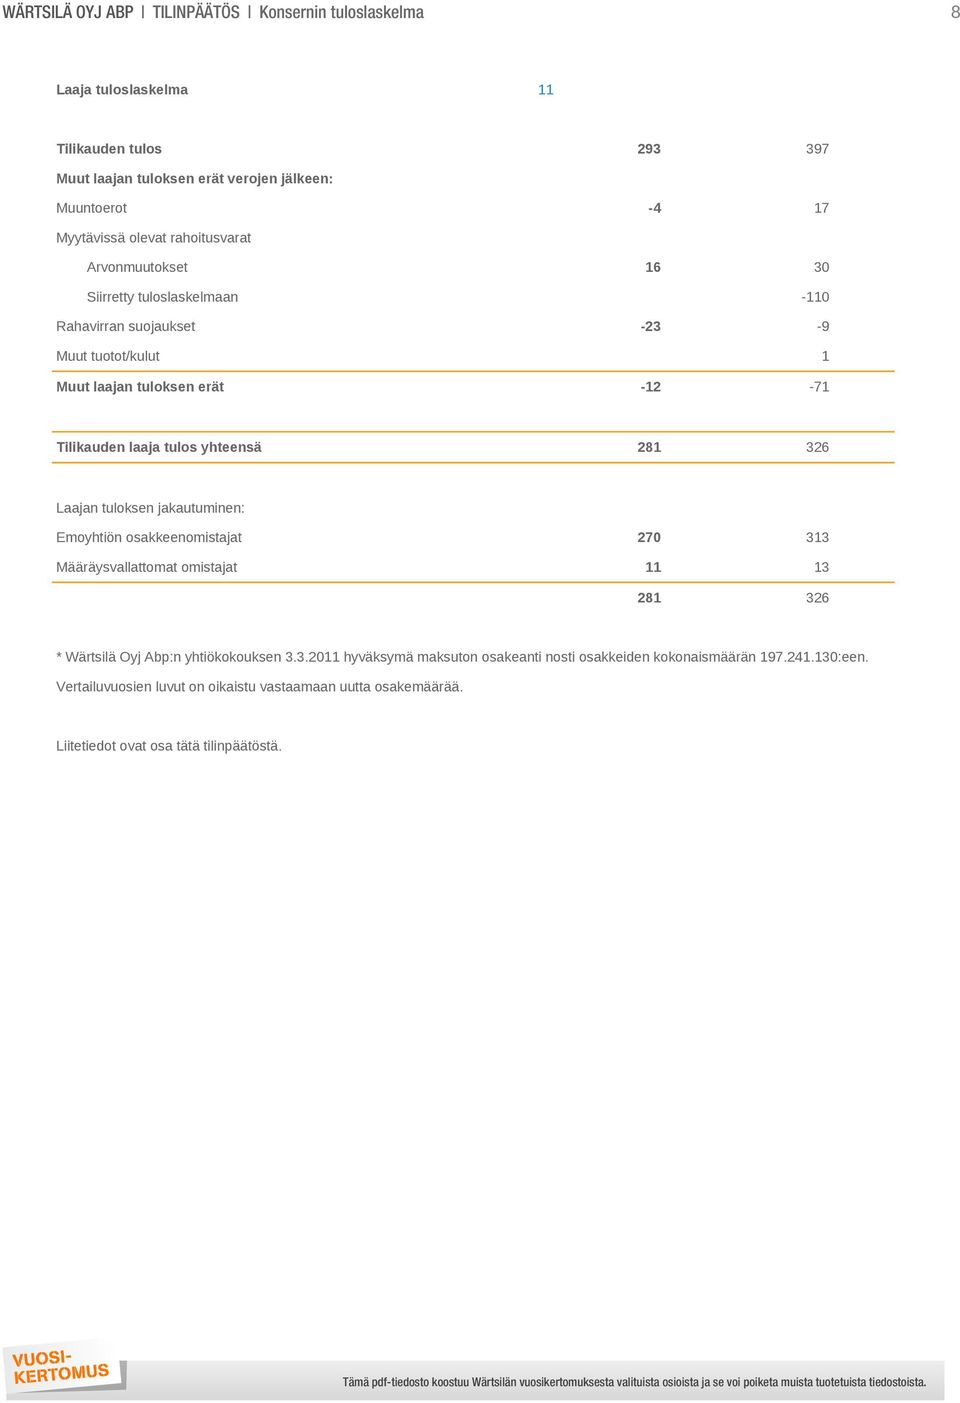 tulos yhteensä 281 326 Laajan tuloksen jakautuminen: Emoyhtiön osakkeenomistajat 270 313 Määräysvallattomat omistajat 11 13 281 326 * Wärtsilä Oyj Abp:n yhtiökokouksen 3.3.2011 hyväksymä maksuton osakeanti nosti osakkeiden kokonaismäärän 197.